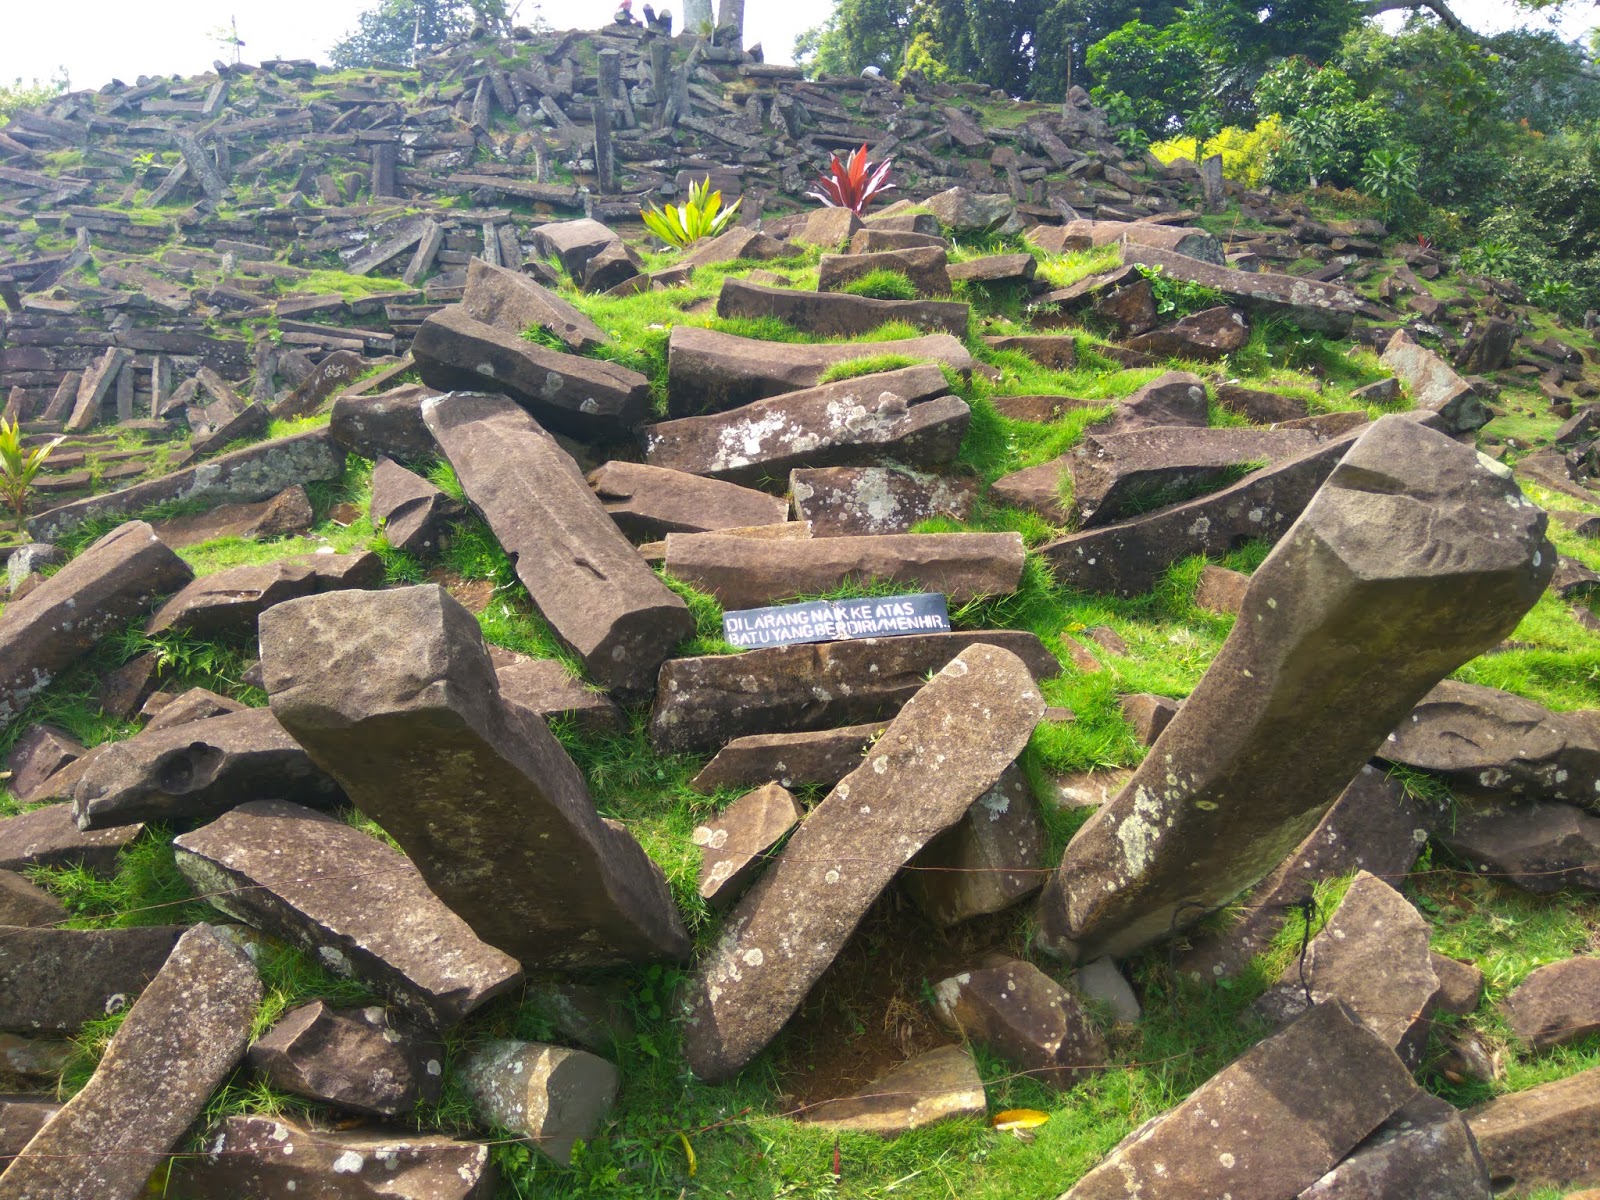  Misteri Situs Gunung Padang Jawa Barat Indonesia, Apakah Atlantis Yang Hilang ?